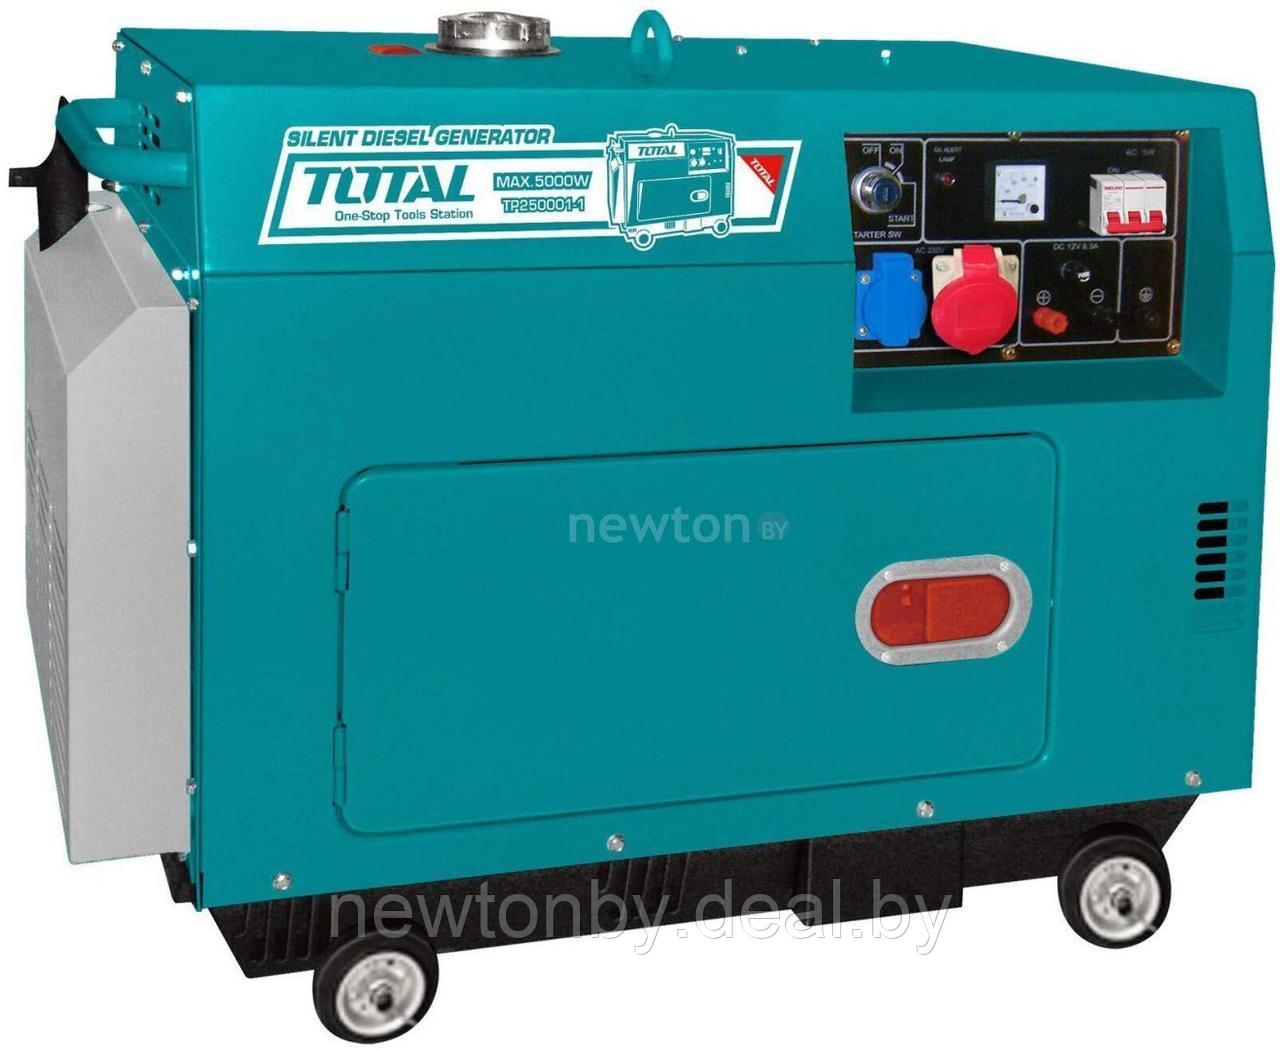 Дизельный генератор Total TP250003-1